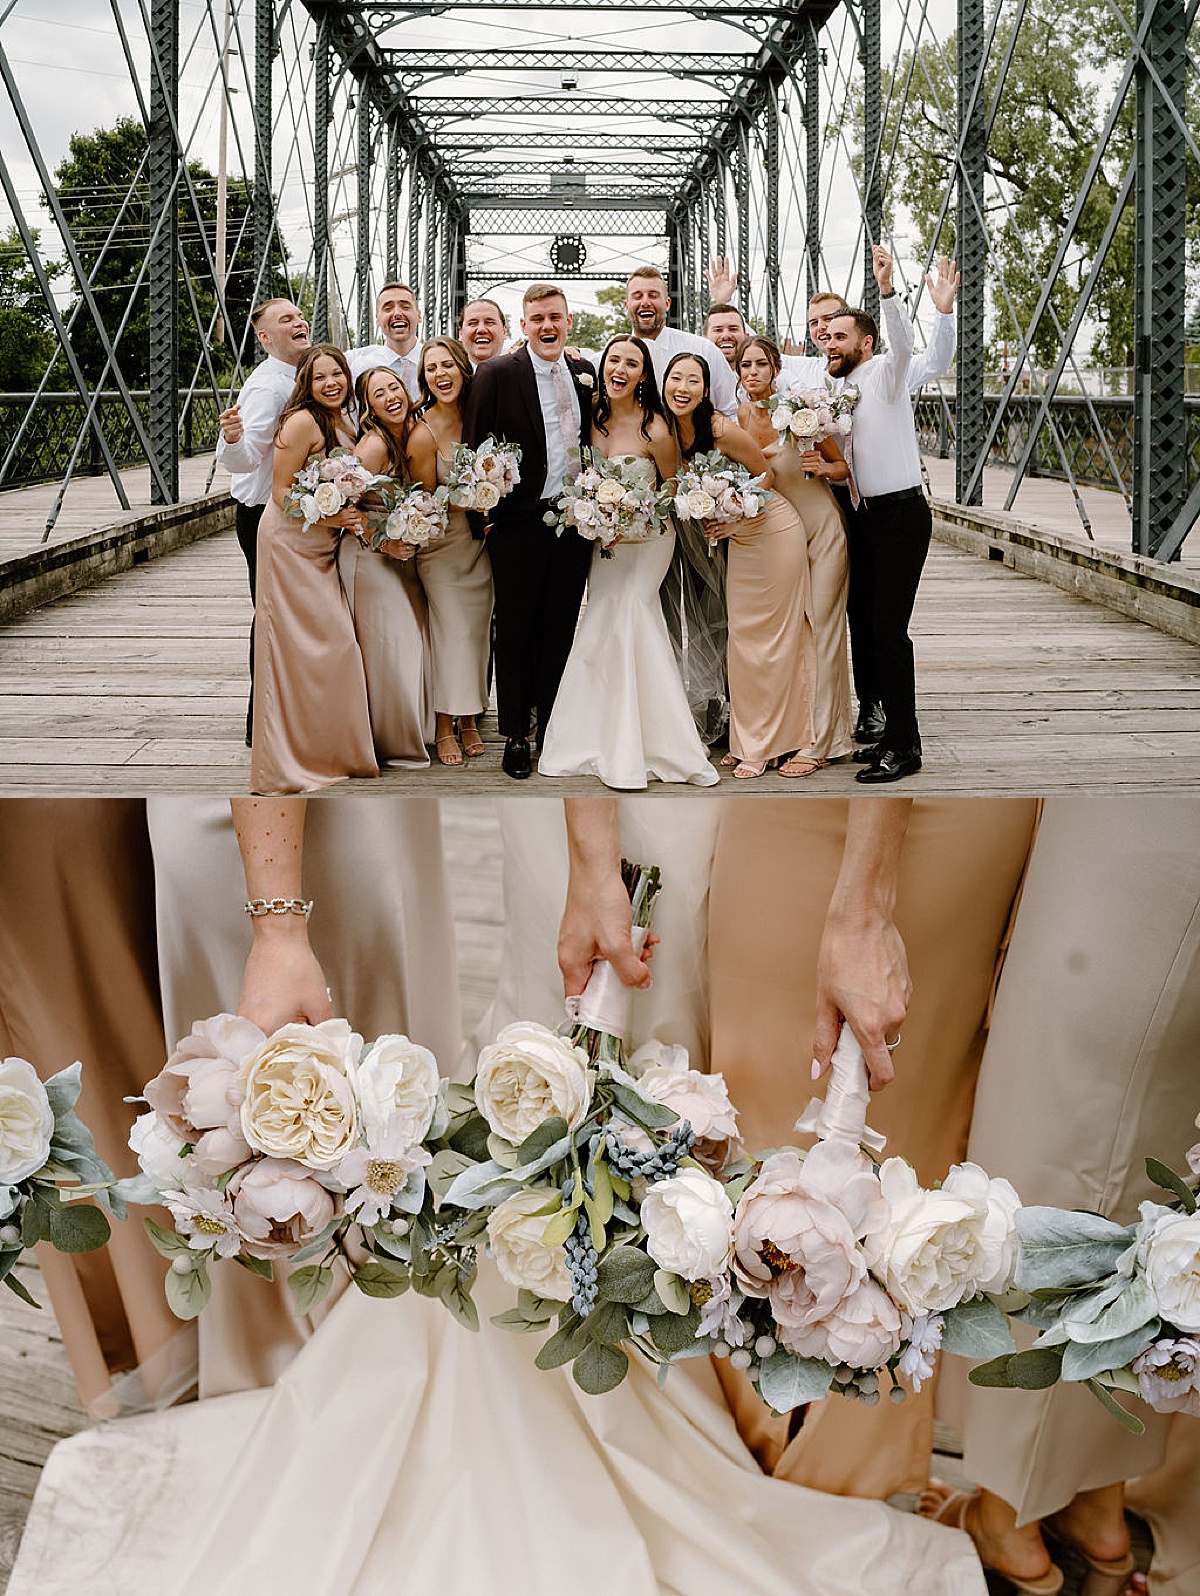 wedding party celebrates newlywed couple on midwest iron bridge after elegant wedding shot by Indigo Lace Collective